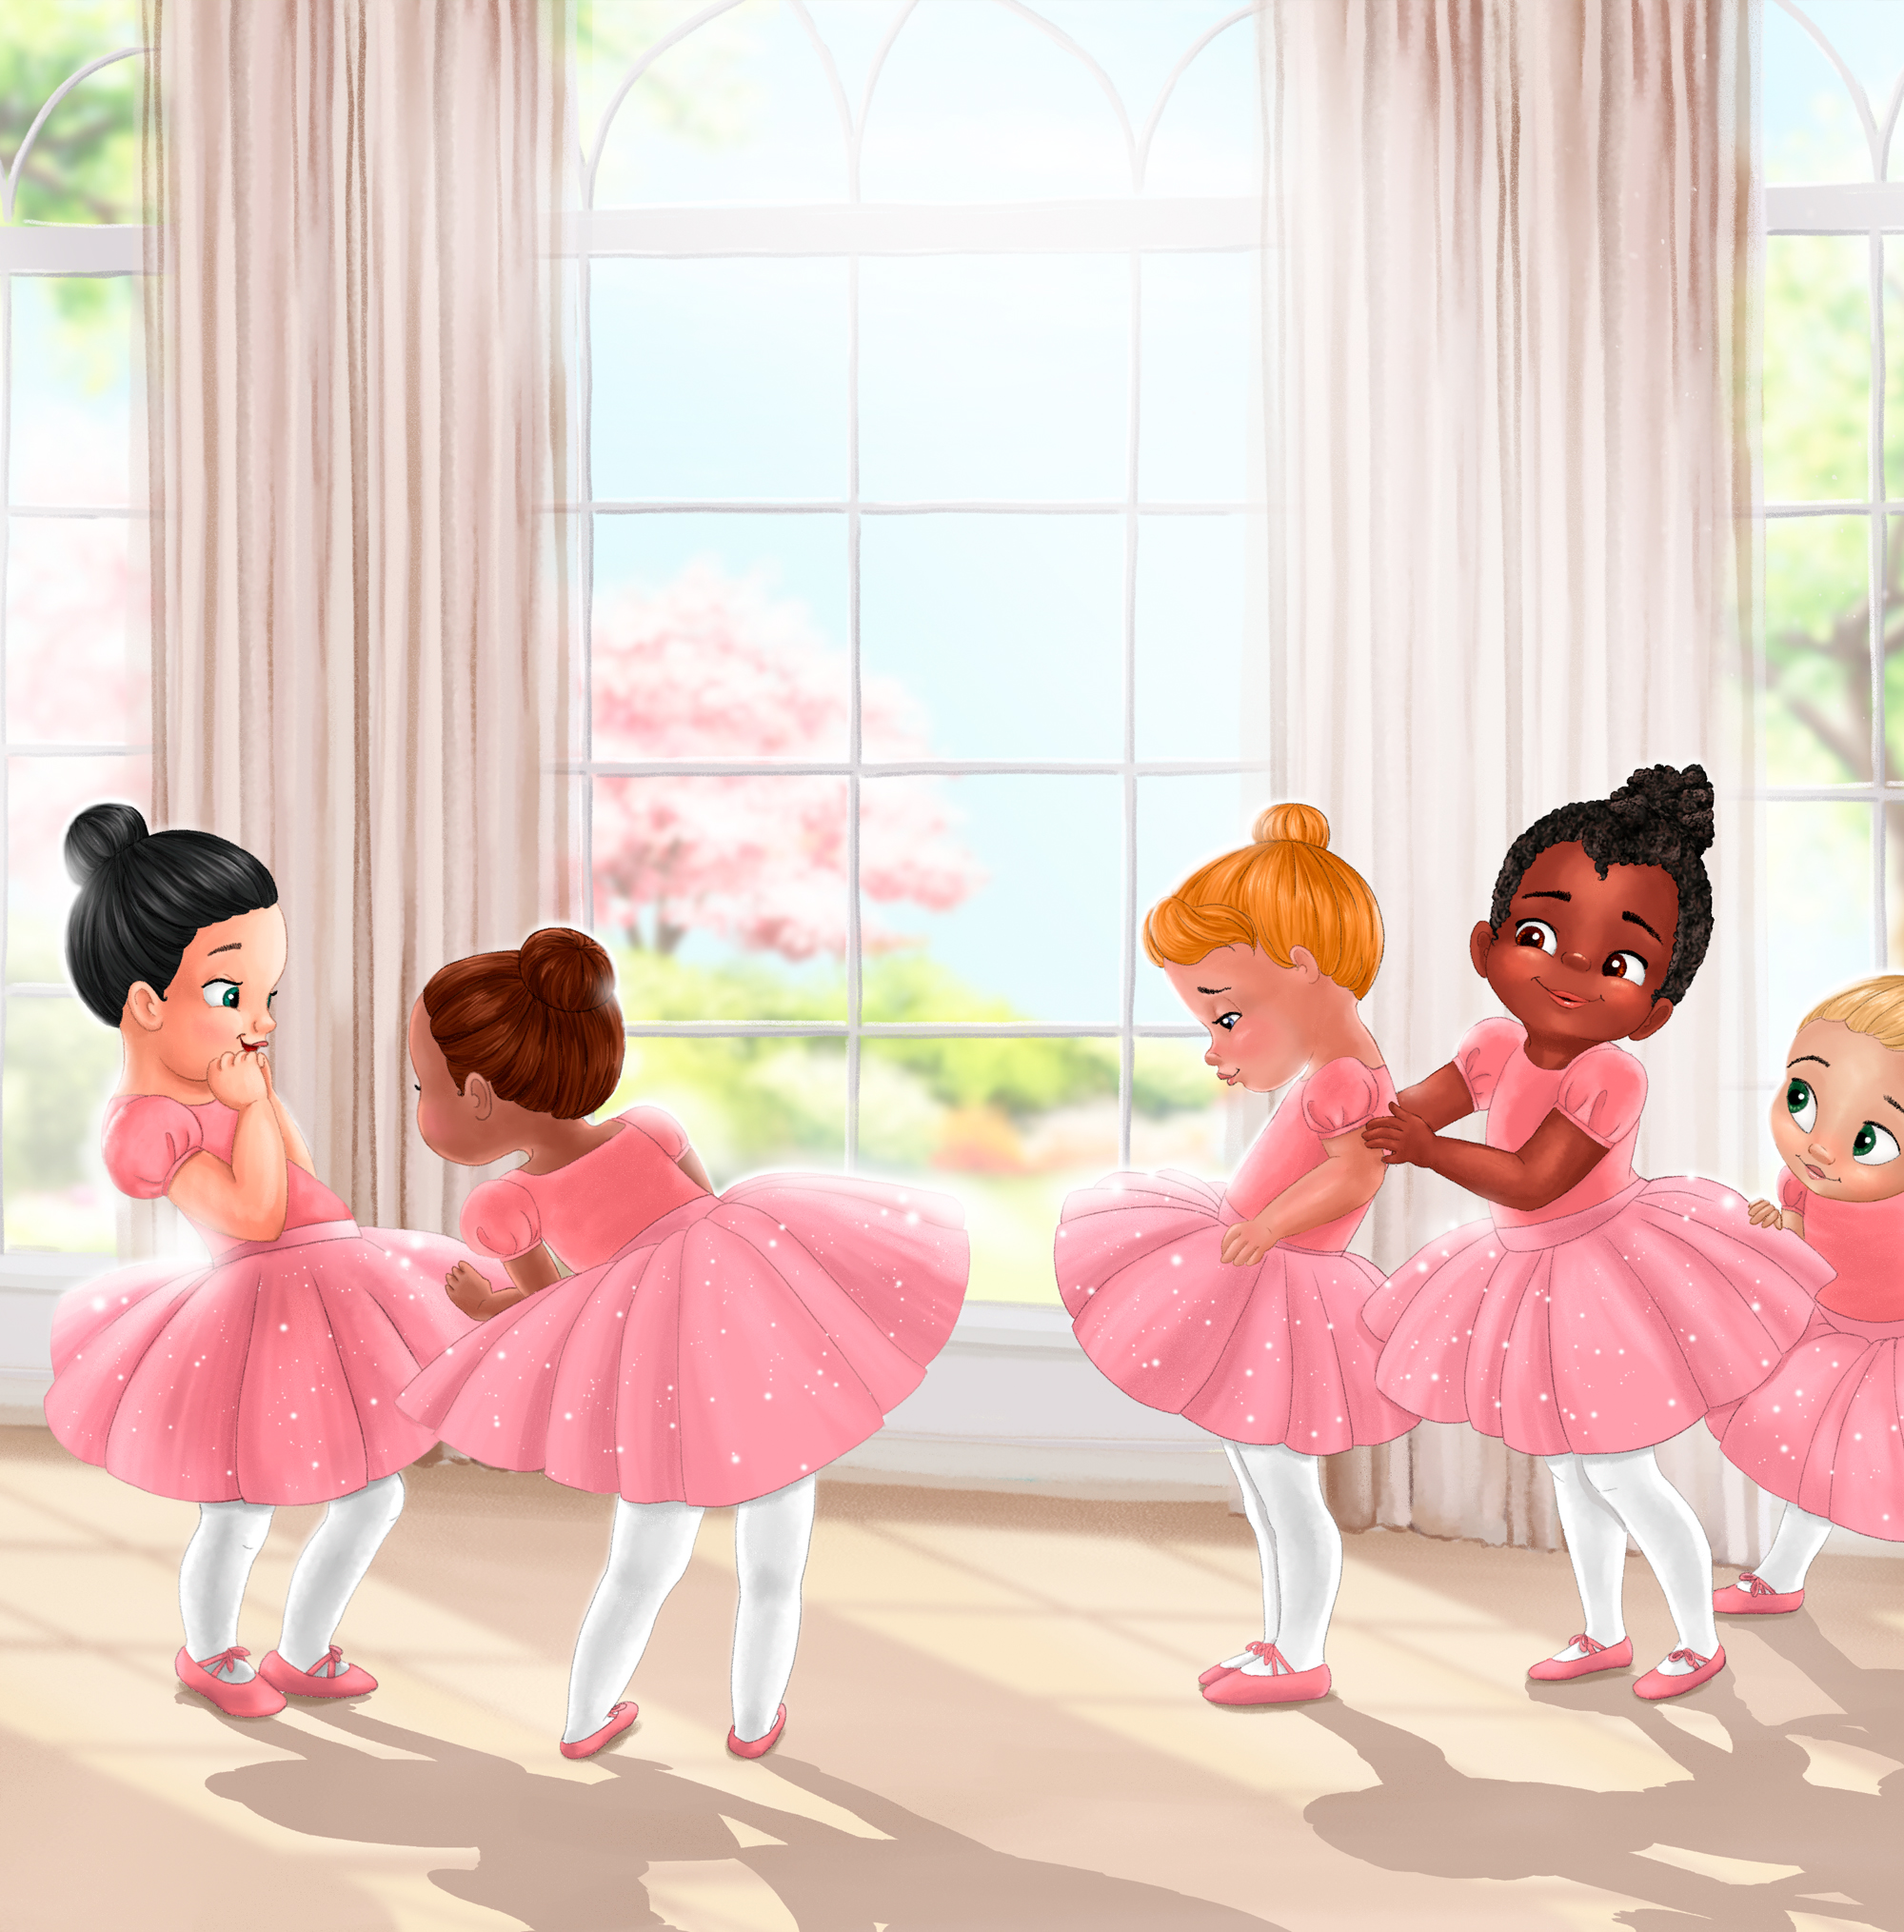 Tutu Tales Digital Illustration Sunlight Ballet Studio Ballerinas